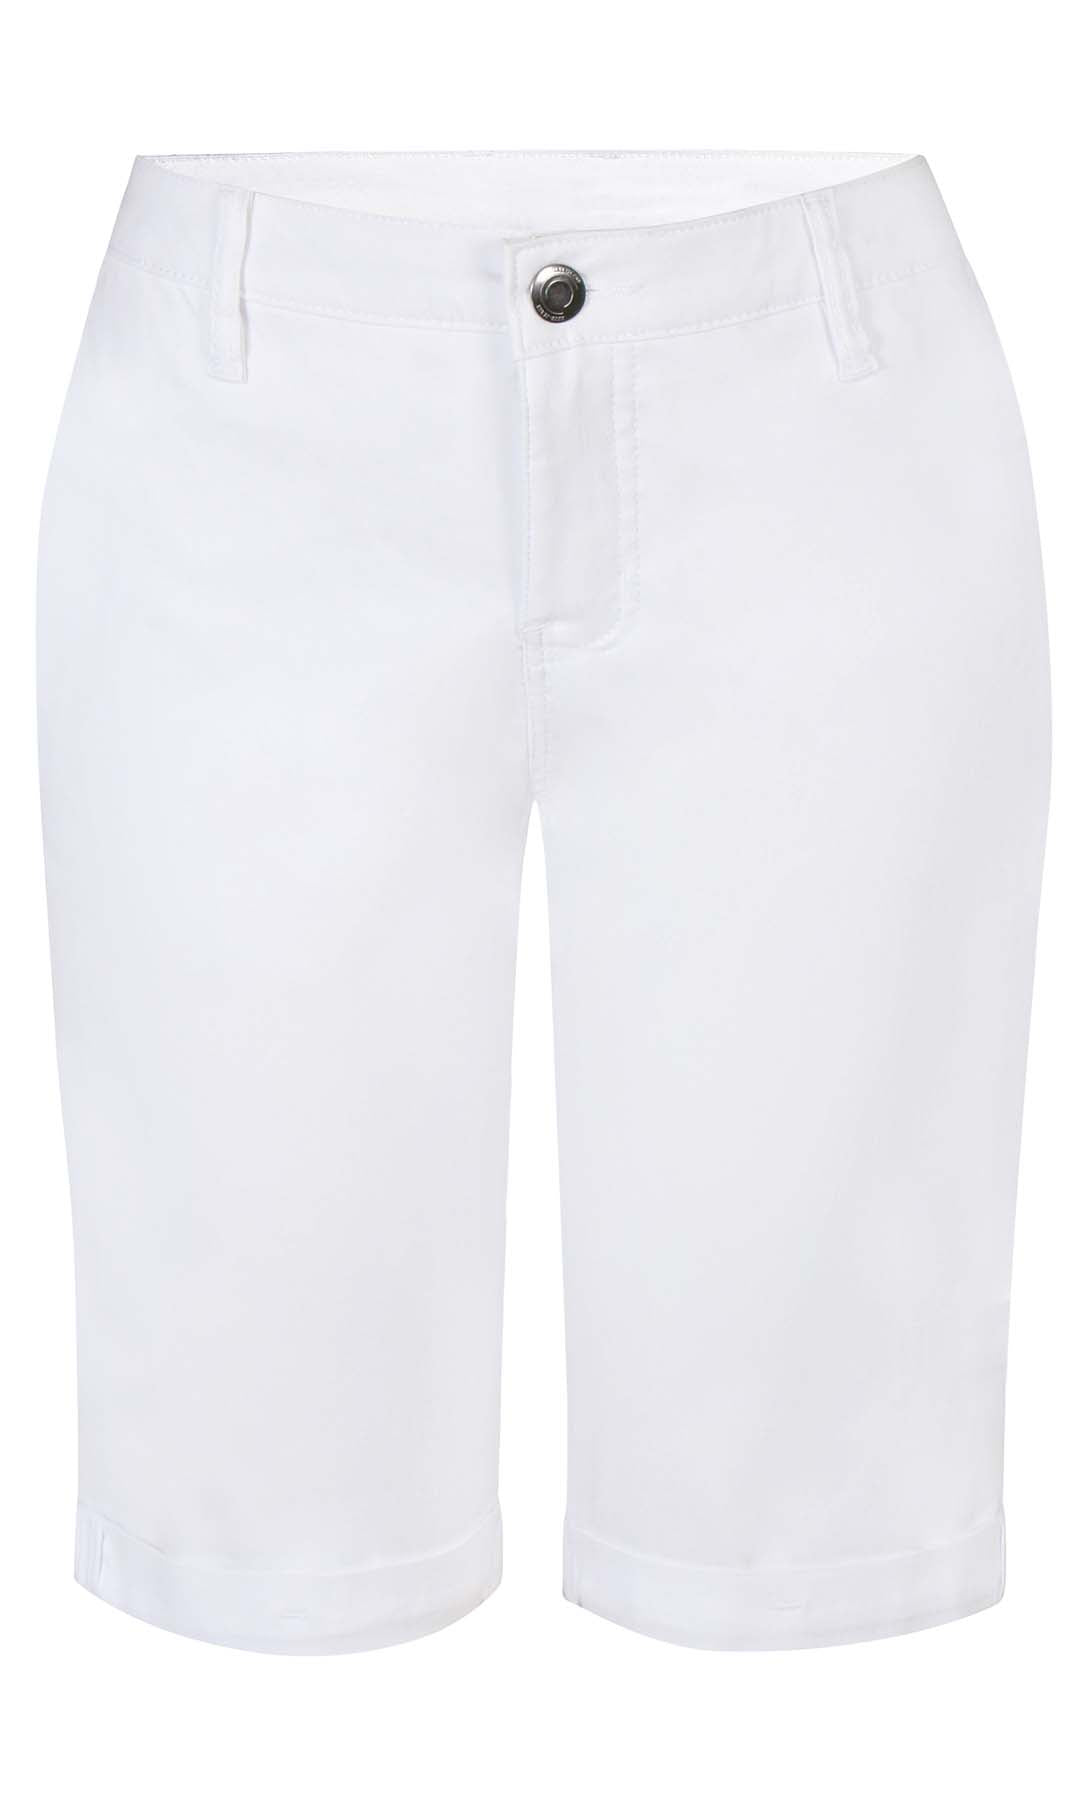  Sanne 313, White Bengaline Shorts - Timeless Design with Elegant Finish | ZE-ZE |